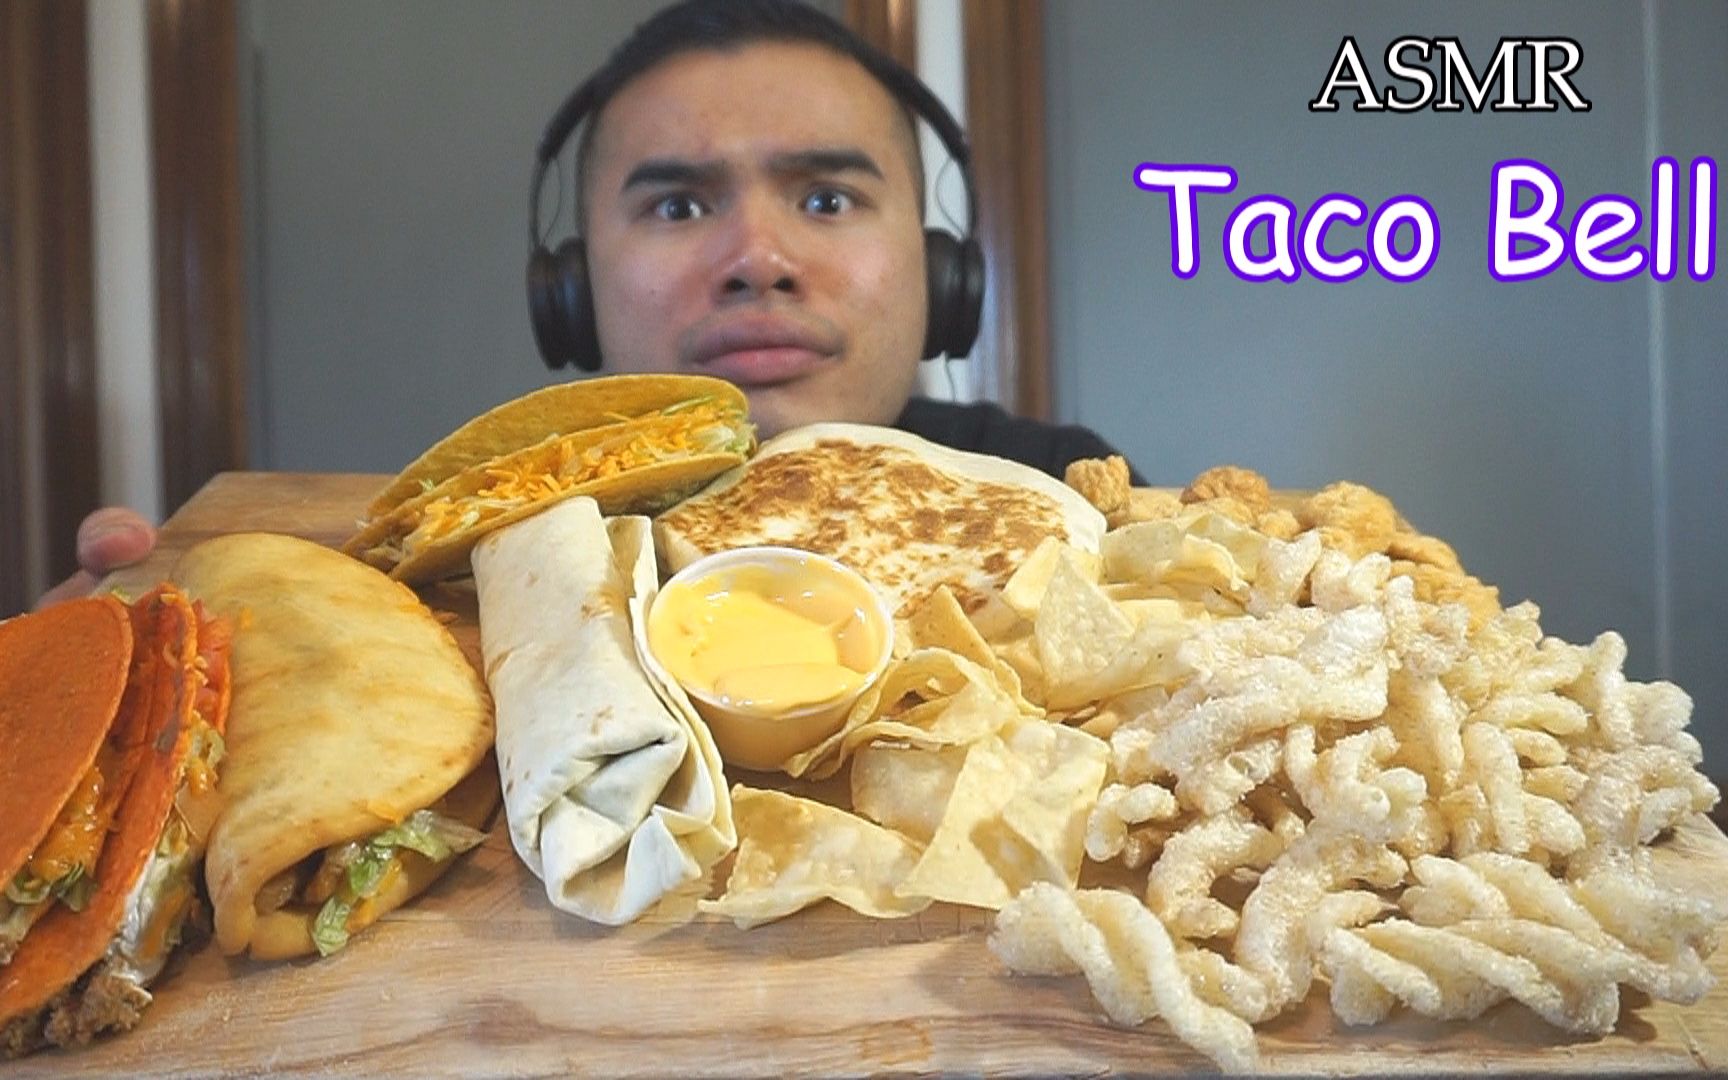 Taco bell asmr